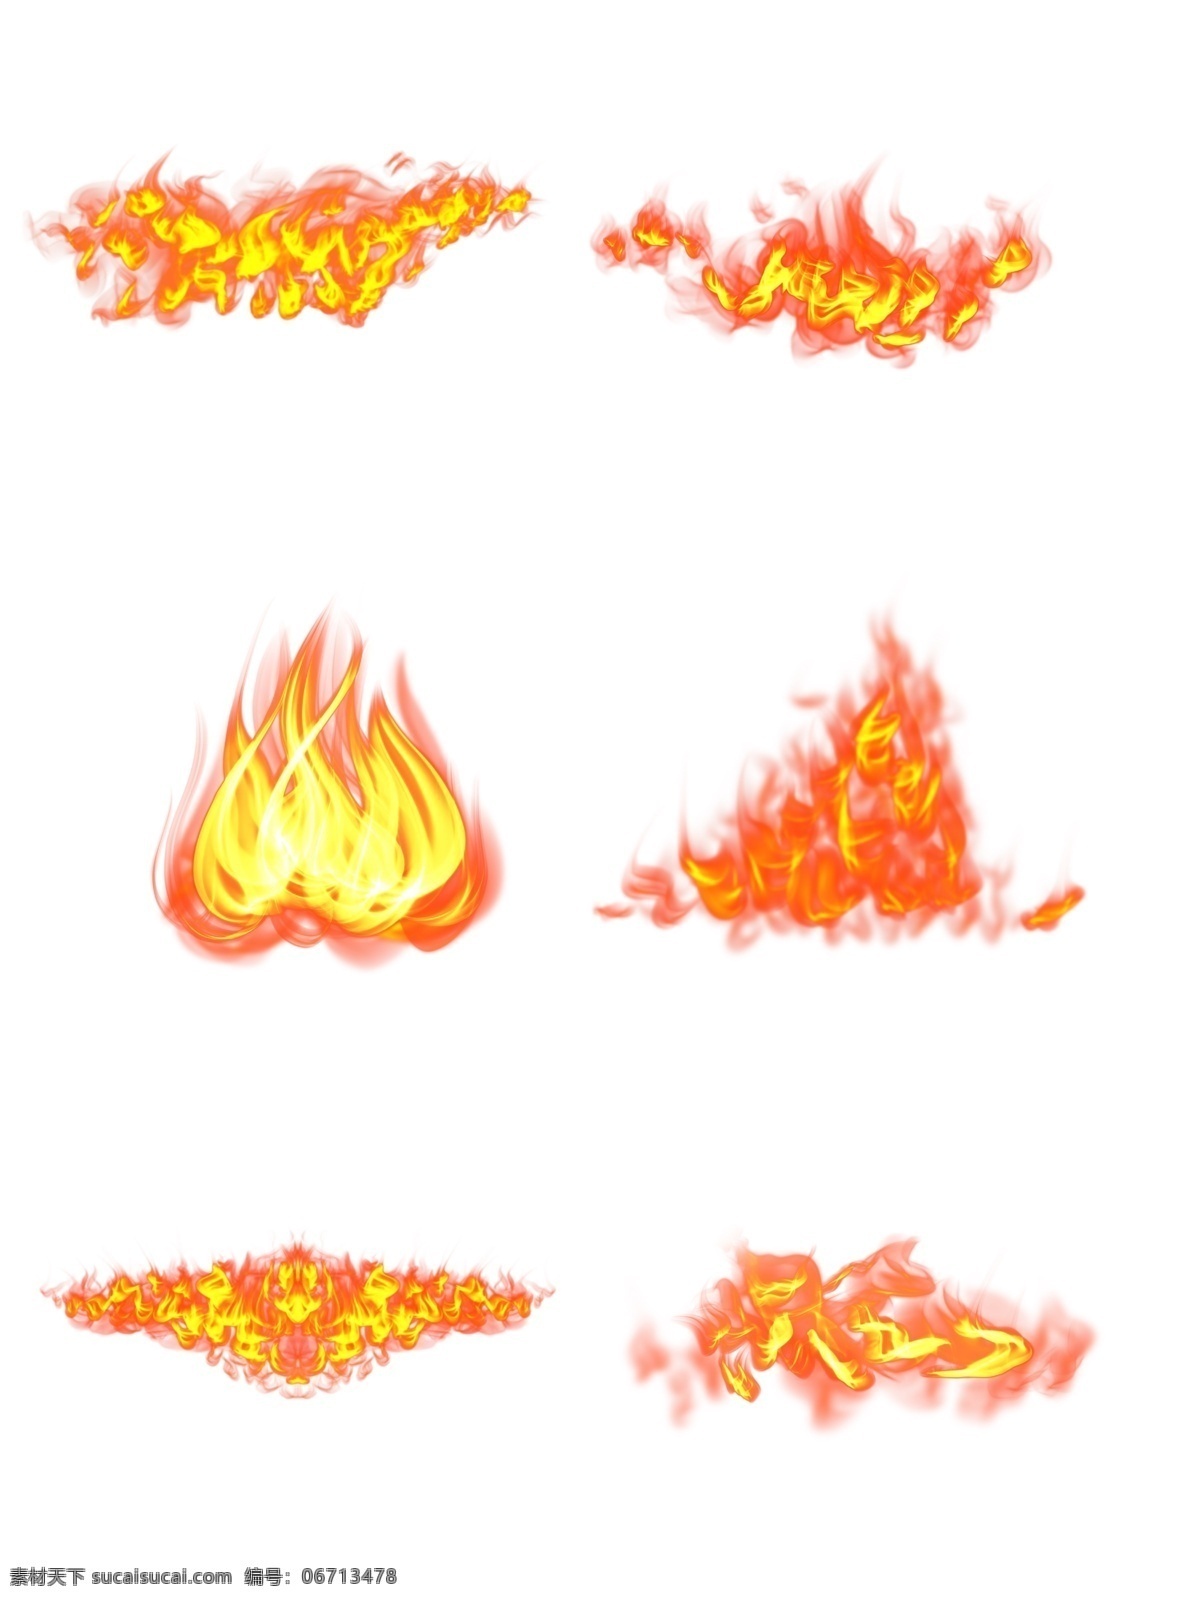 火花素材图片 火花 火焰素材 火焰 火 分层